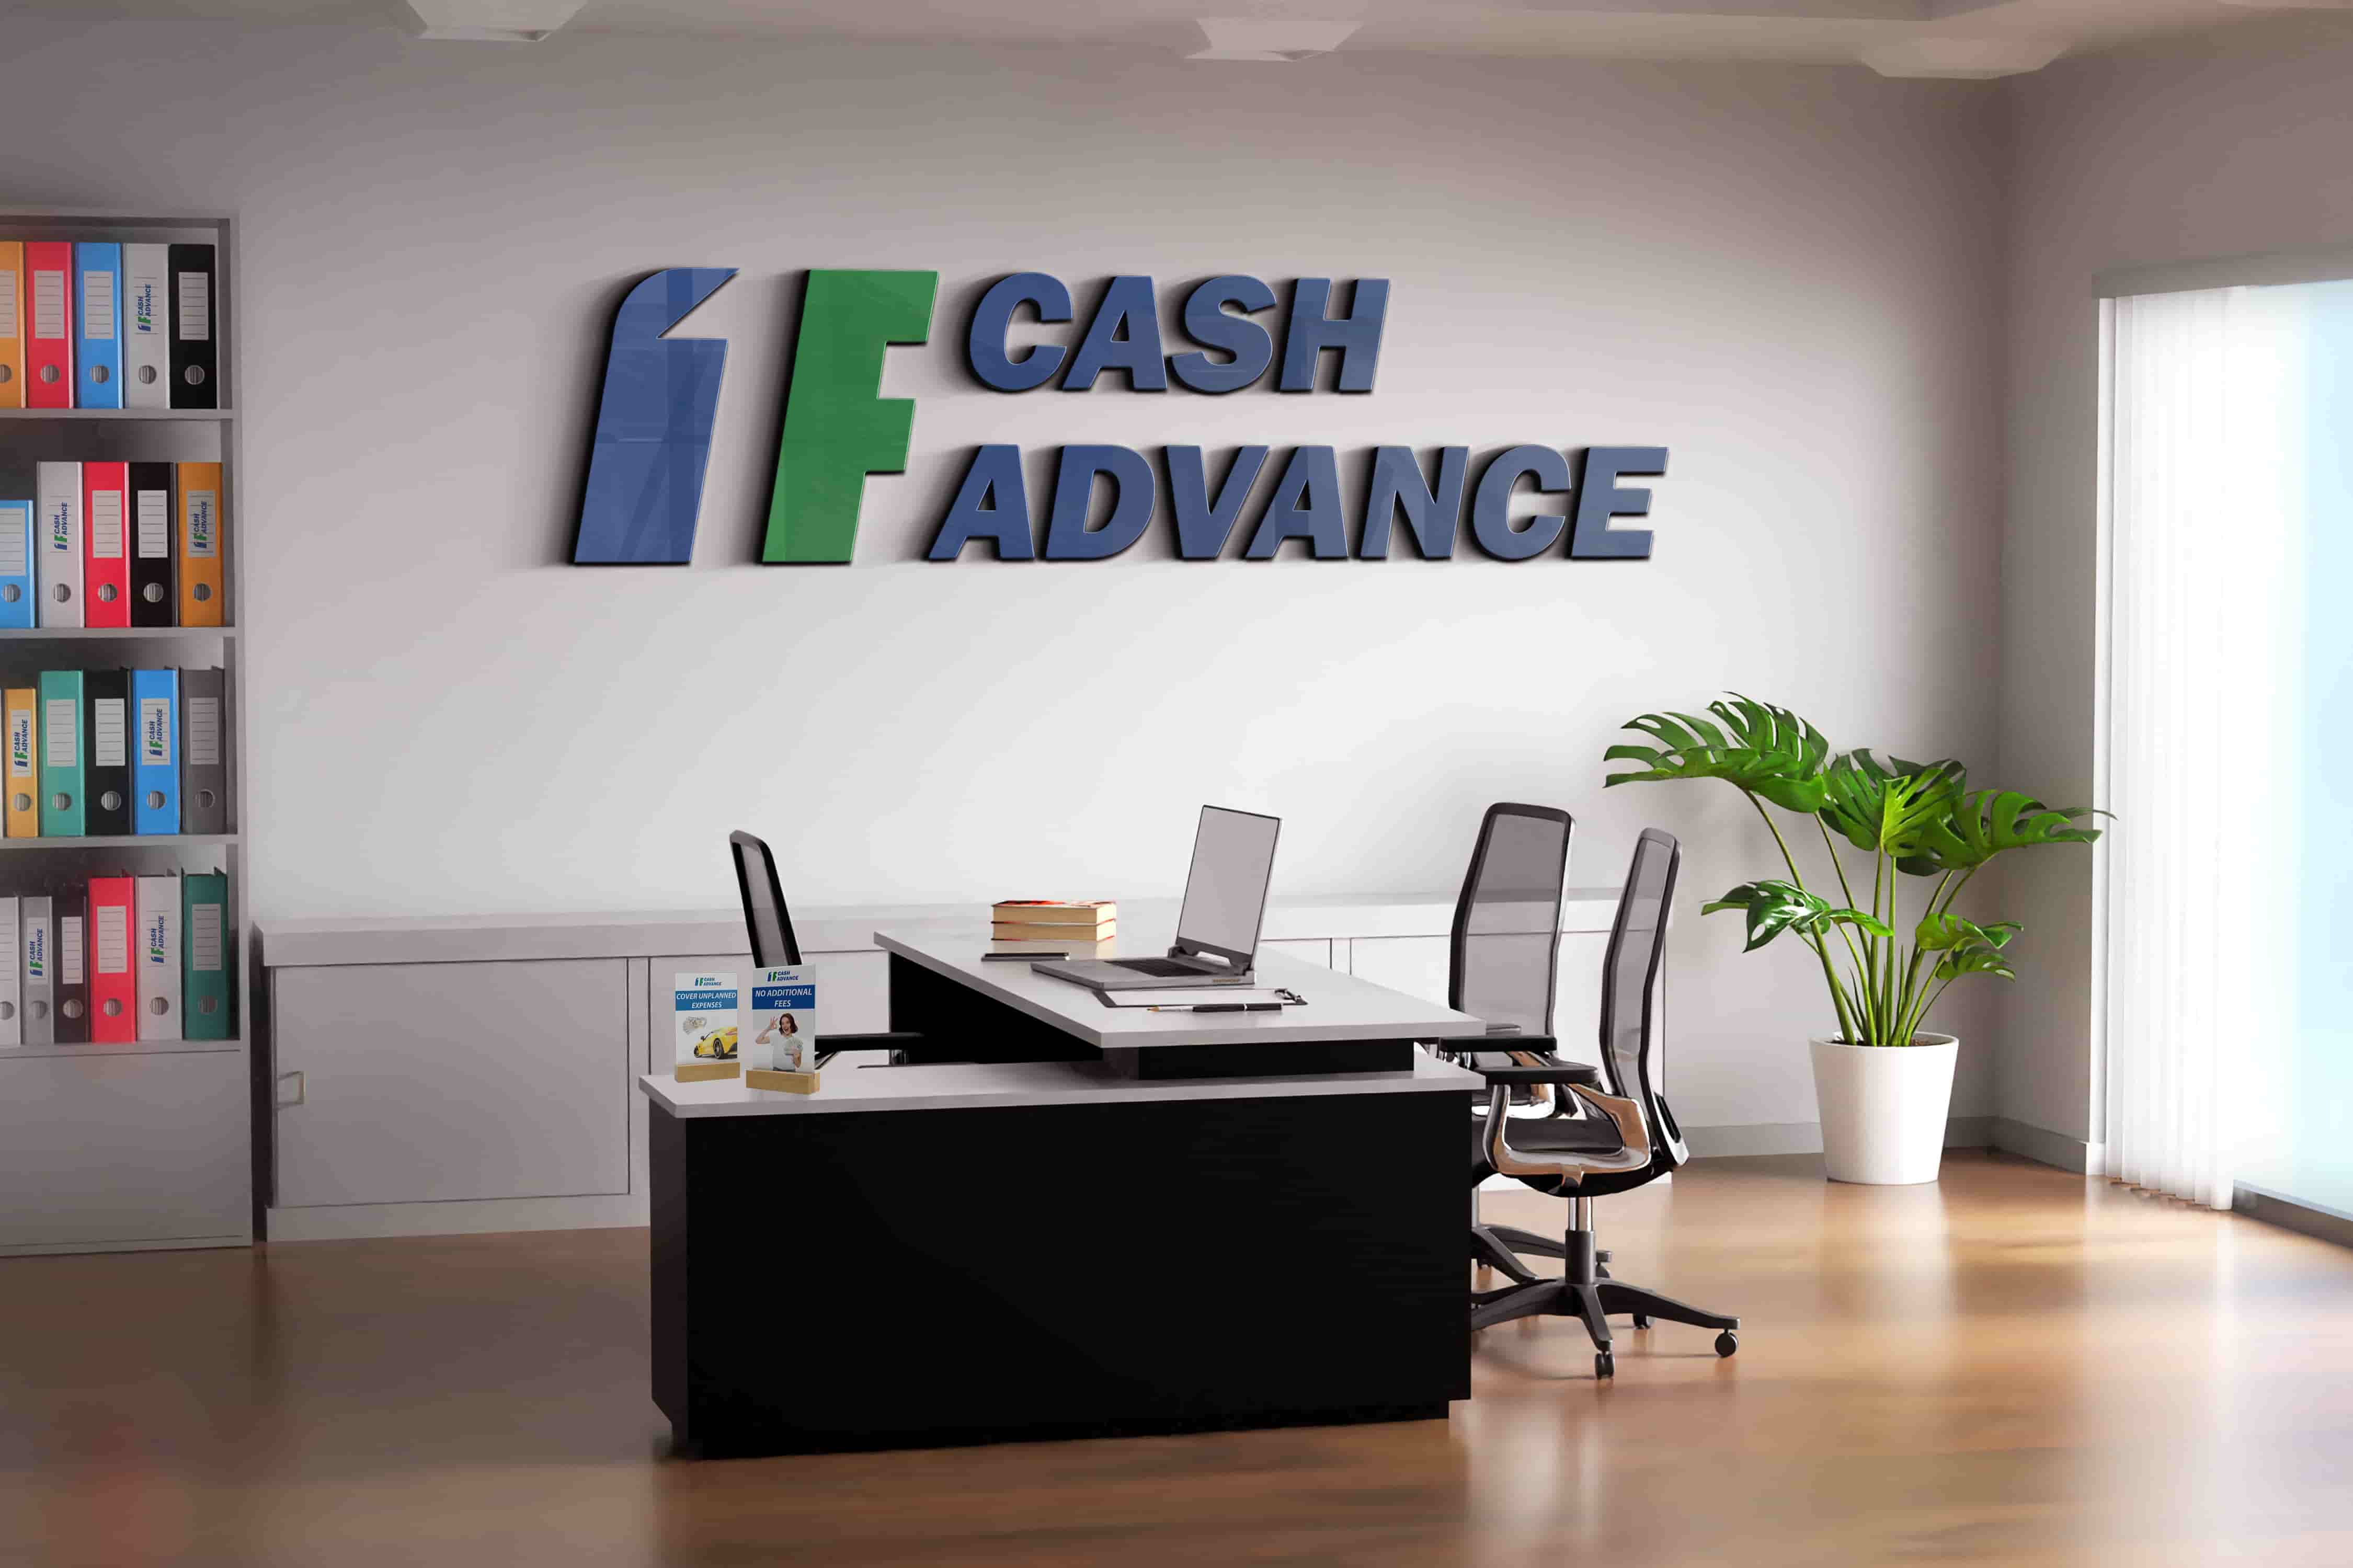 Cash advance loans in Jackson, TN